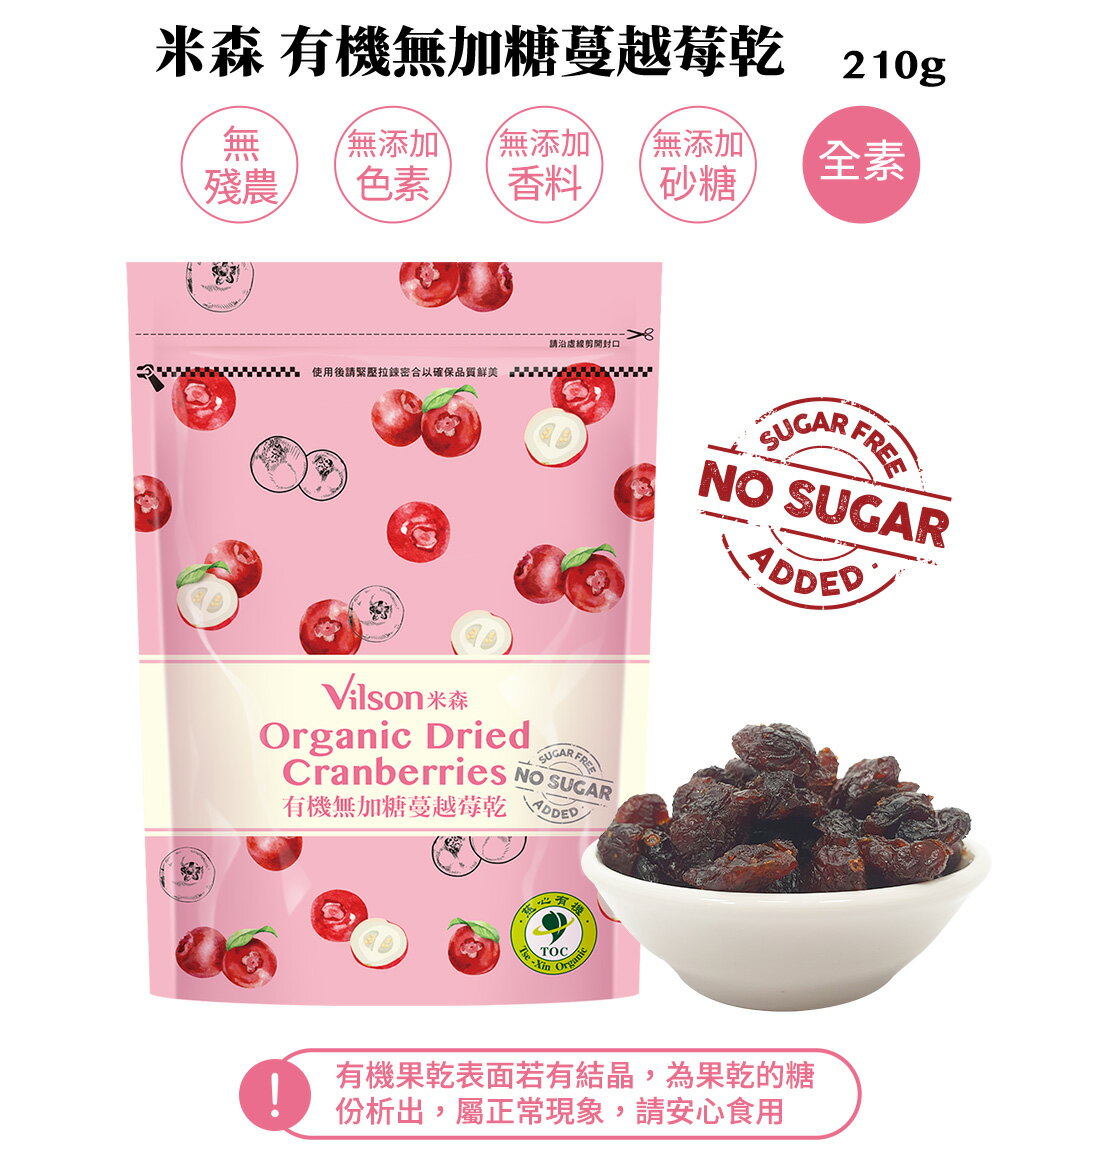 【米森 vilson】8.5折↘ 有機無加糖蔓越莓乾(210g)效期2025.01.15